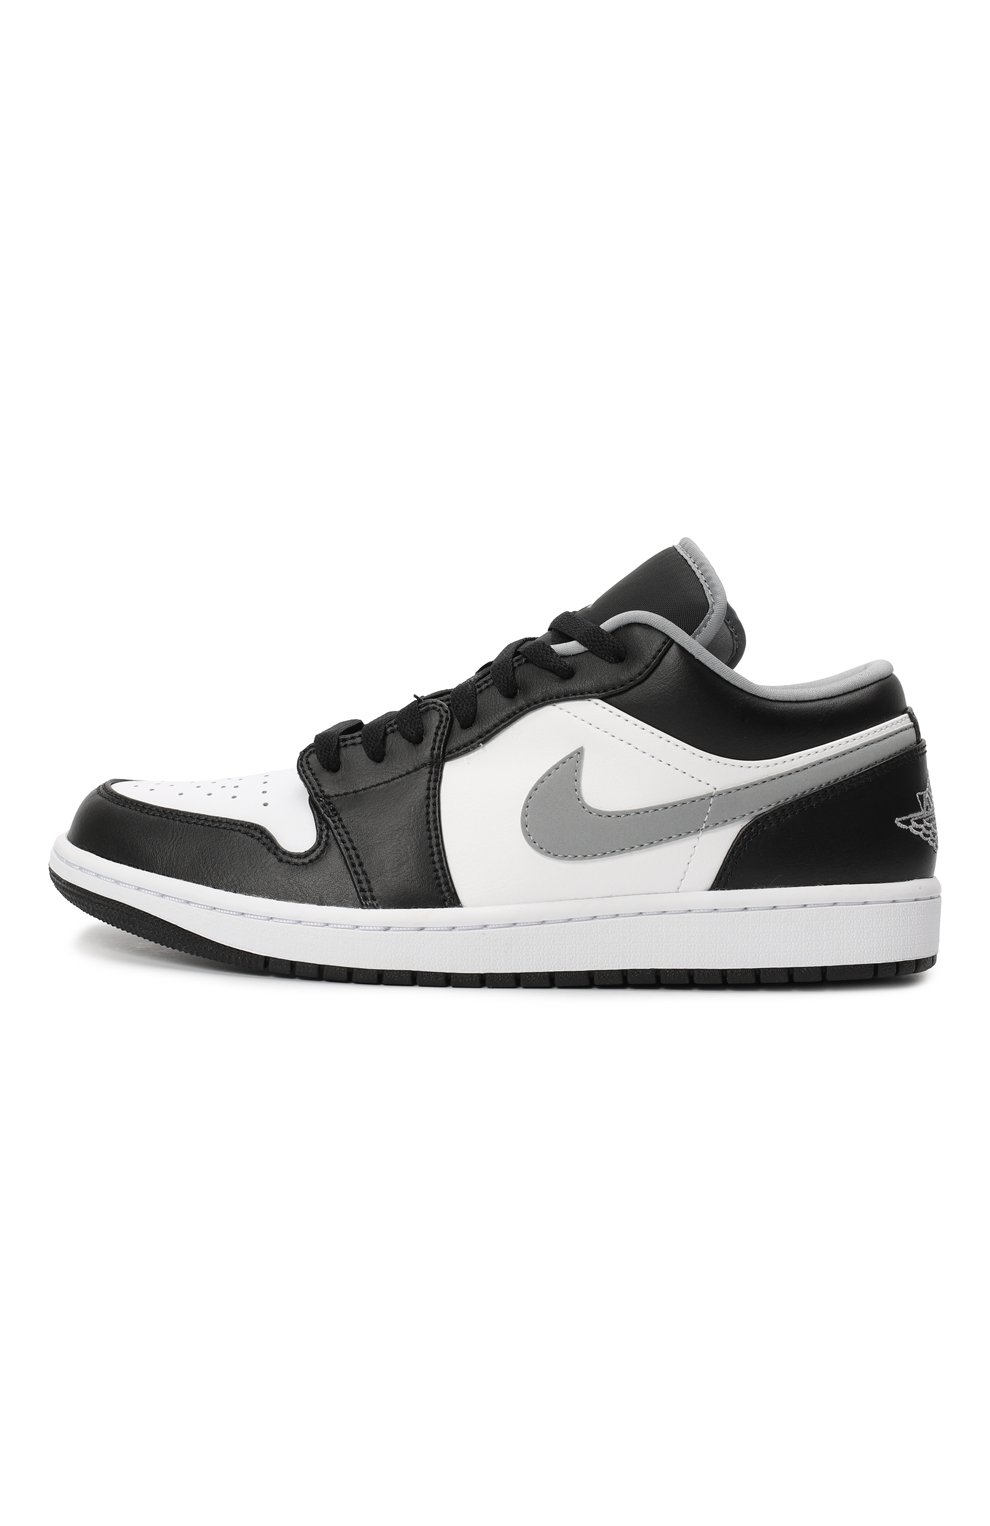 Кеды Air Jordan 1 Low "Black White Grey" | Nike | Чёрно-белый - 4